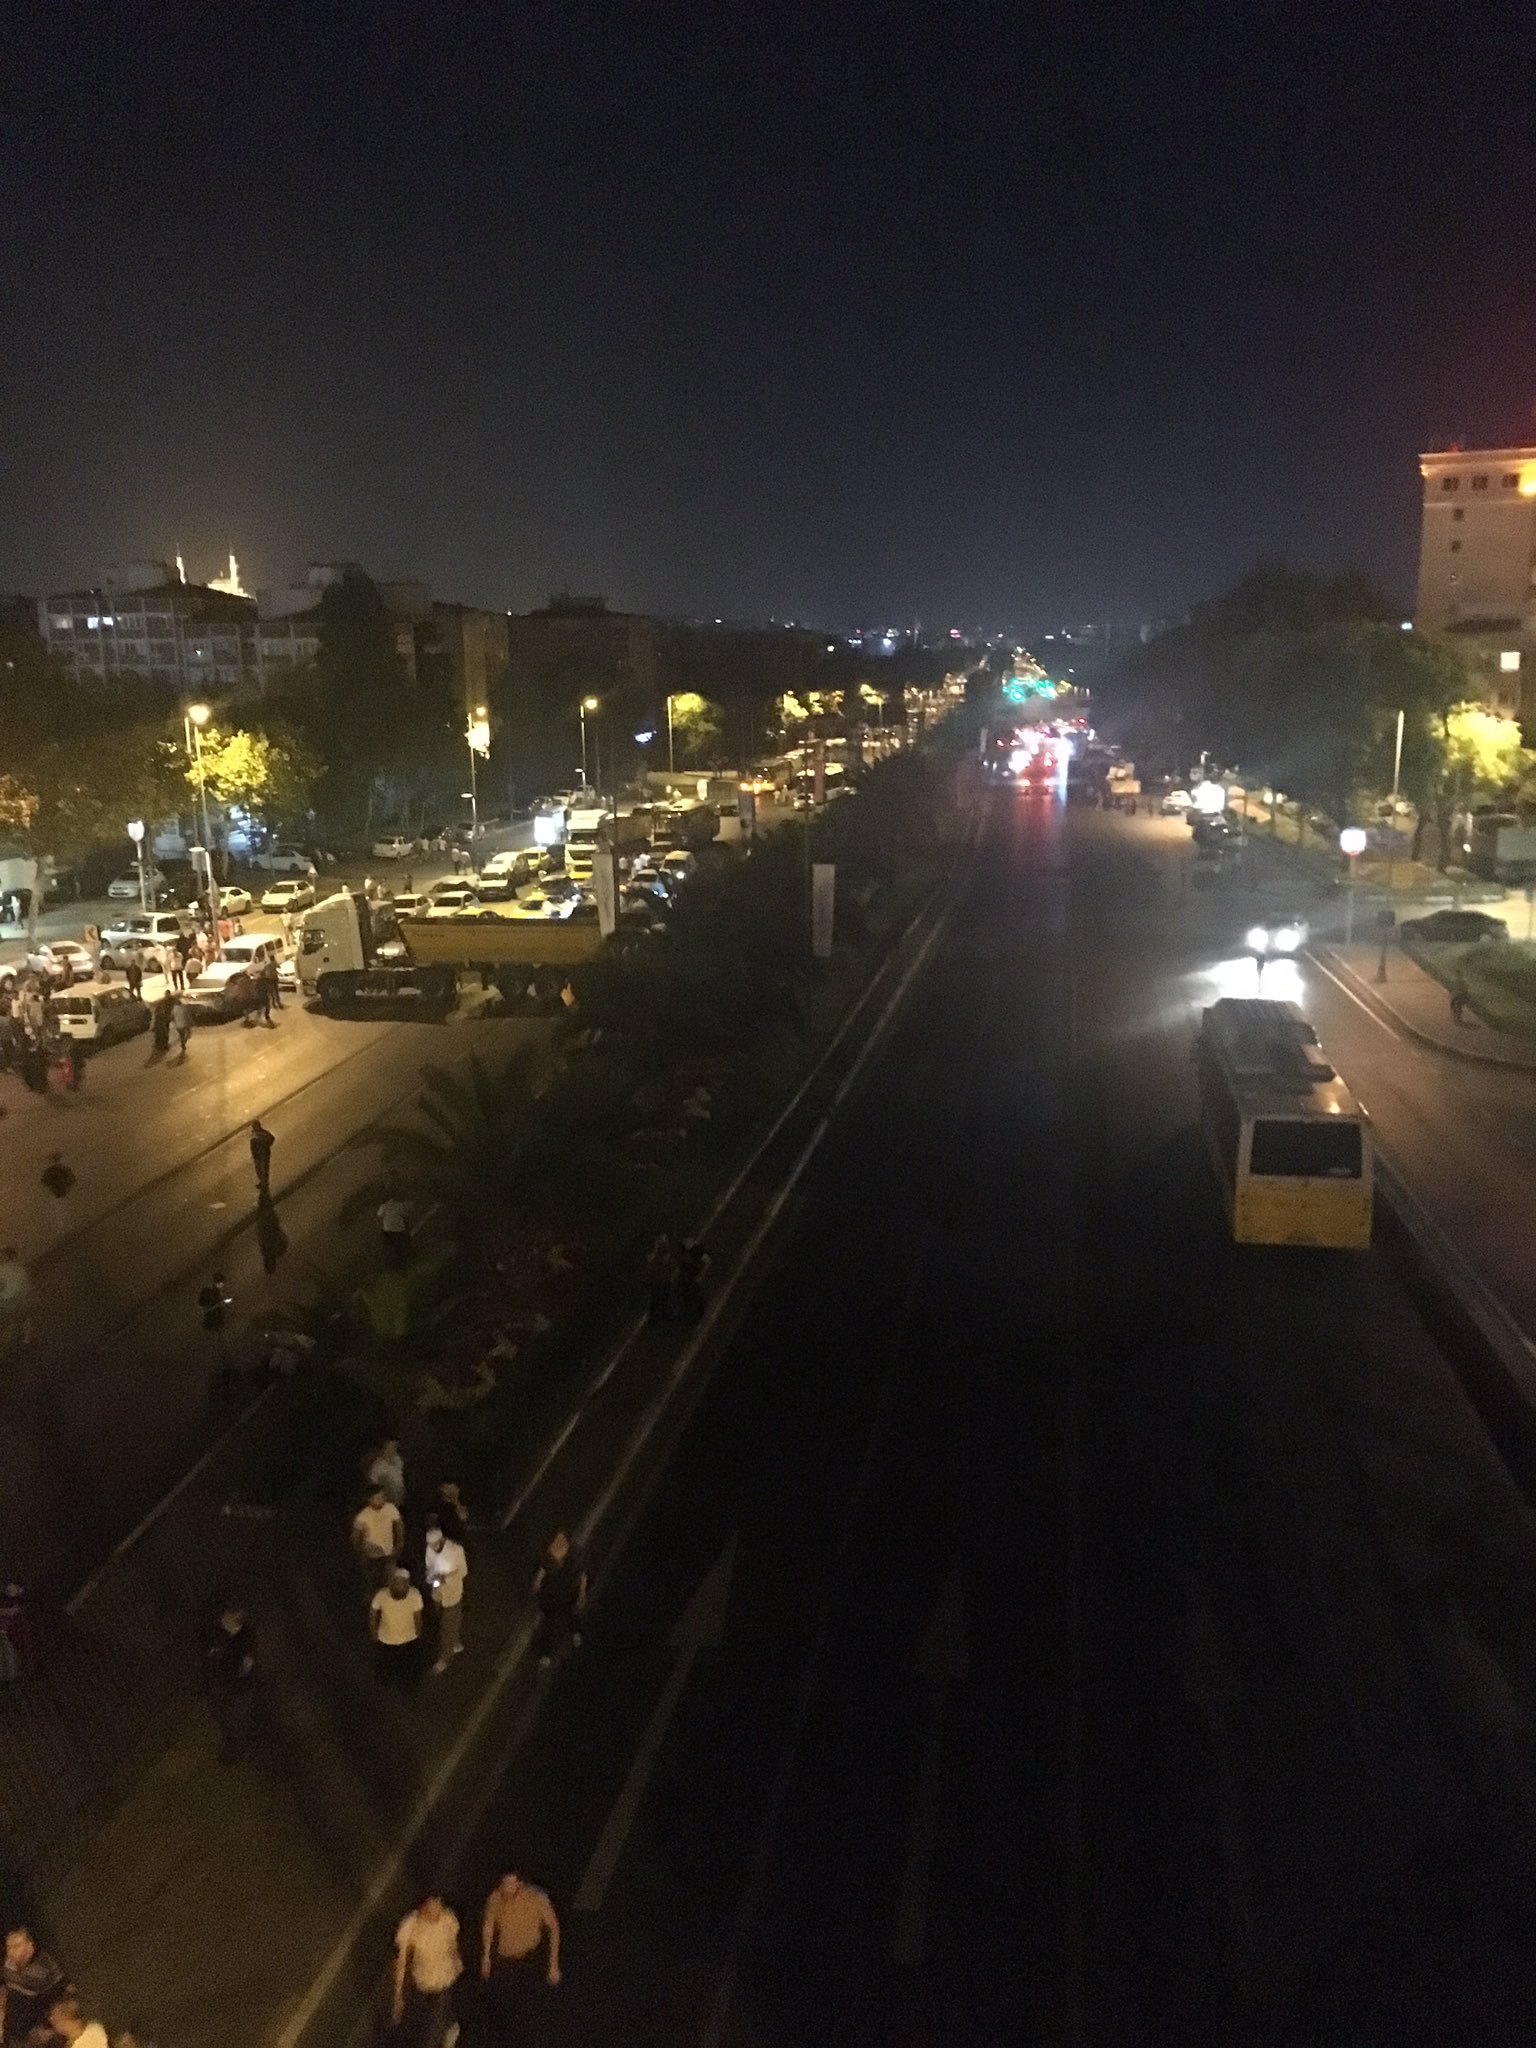 قامت قوات الأمن ومعهم المواطنون بإغلاق شارع الوطن بصف شاحنة حفريات في وسط الشارع بالعرض مانعين بذلك وصول الدبابات إلى مقرّ مديرية أمن إسطنبول الكائن بشارع الوطن.